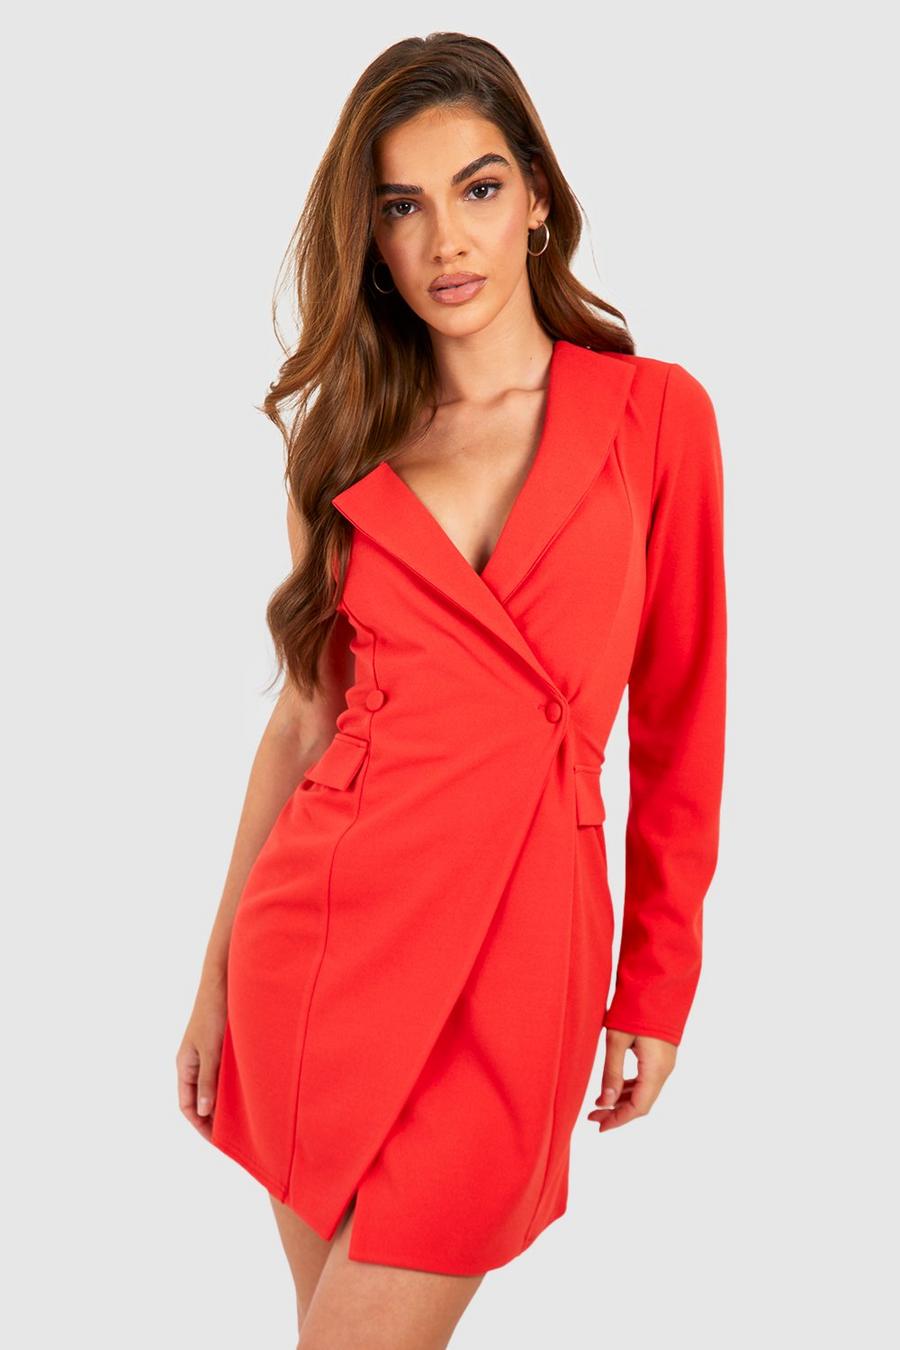 Einärmliges Blazer-Kleid mit Taschen-Detail, Burnt orange